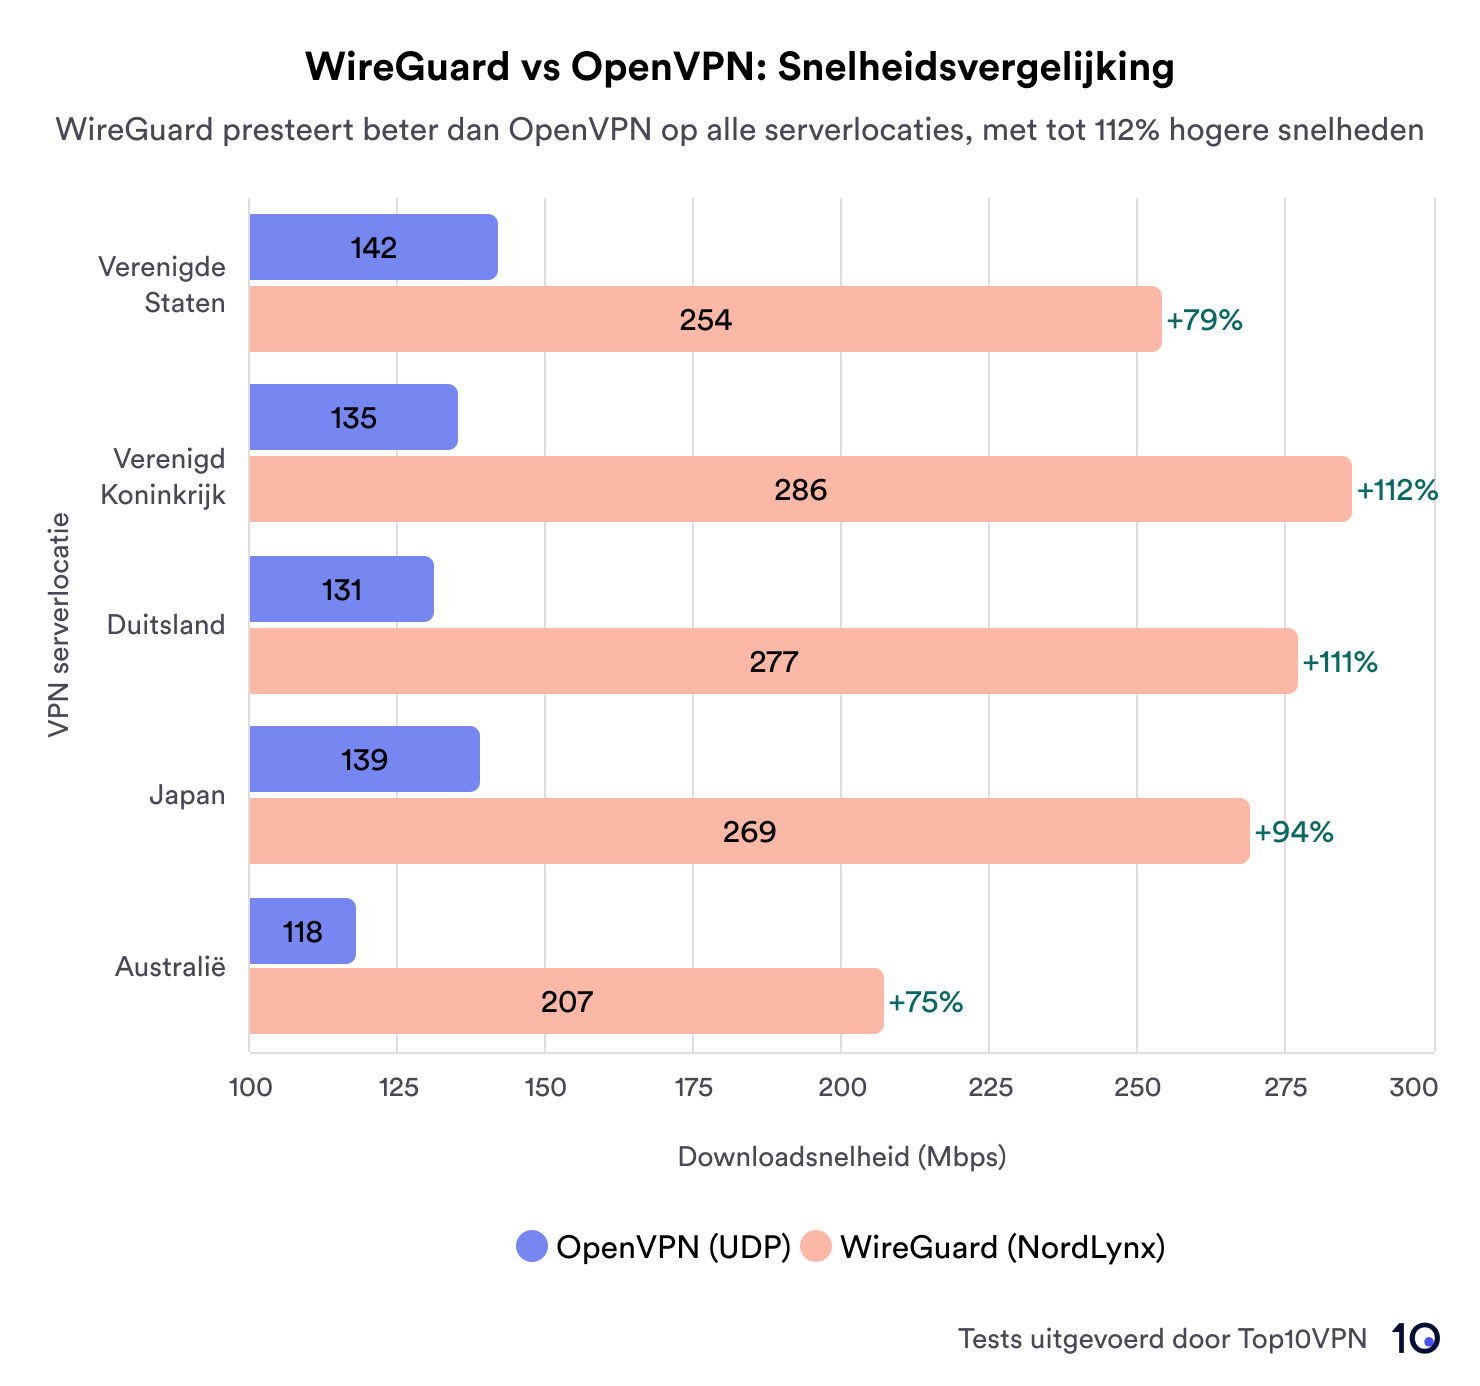 Staafdiagram waarin de downloadsnelheden van WireGuard en OpenVPN op een reeks serverlocaties worden vergeleken